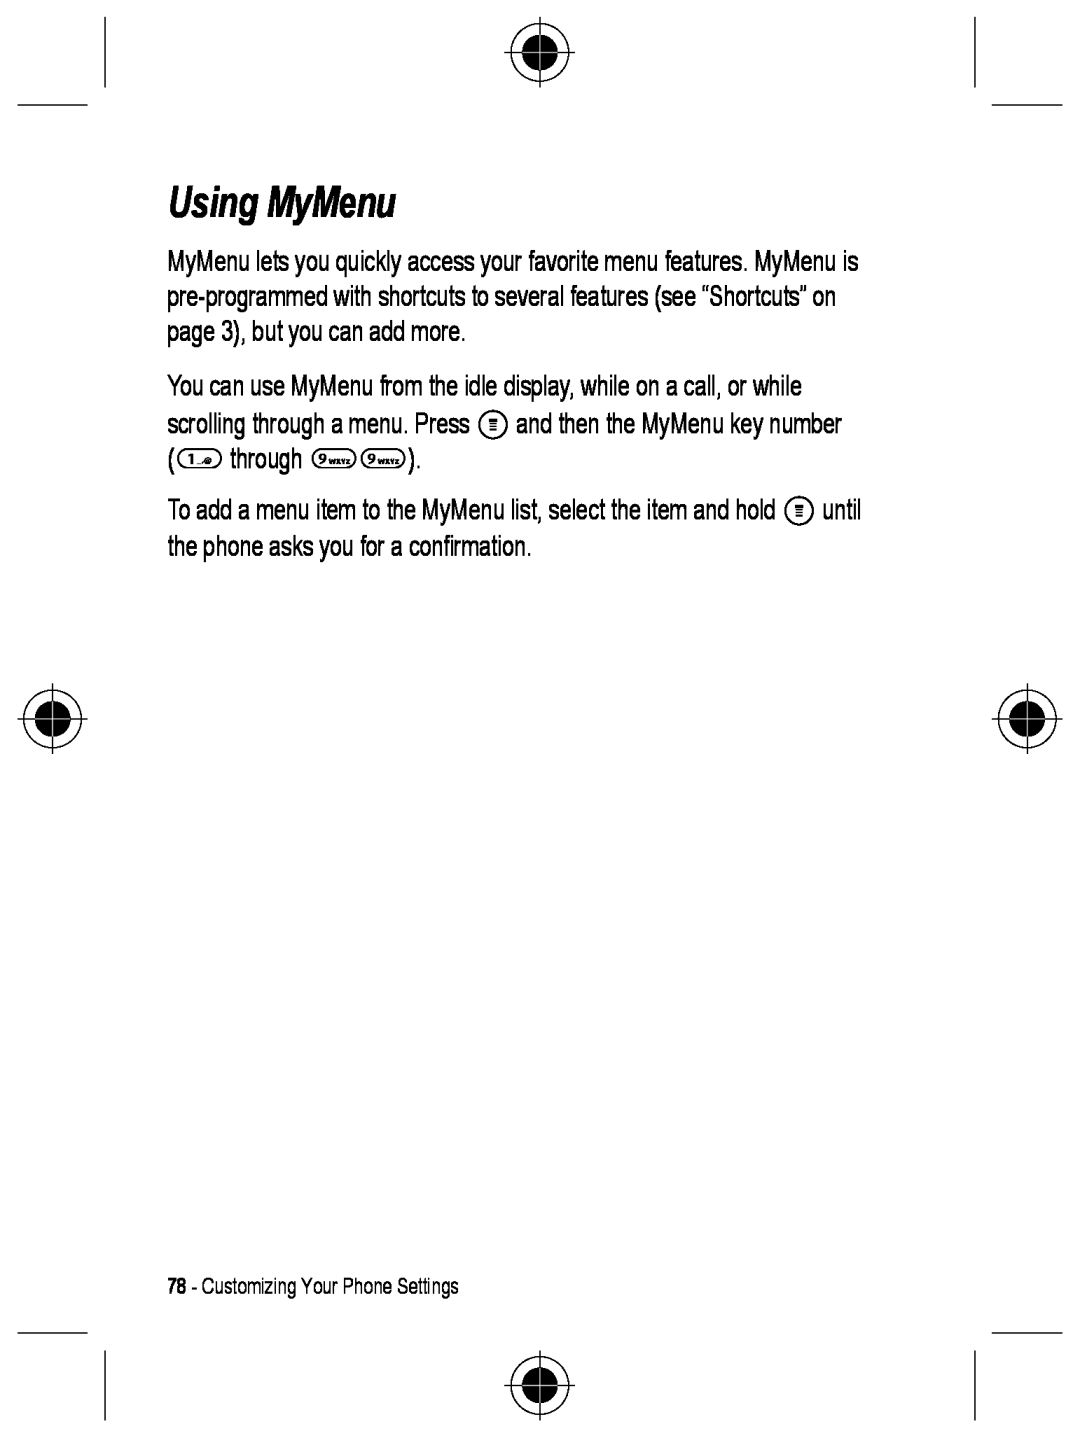 Motorola C330 manual Using MyMenu, Customizing Your Phone Settings 